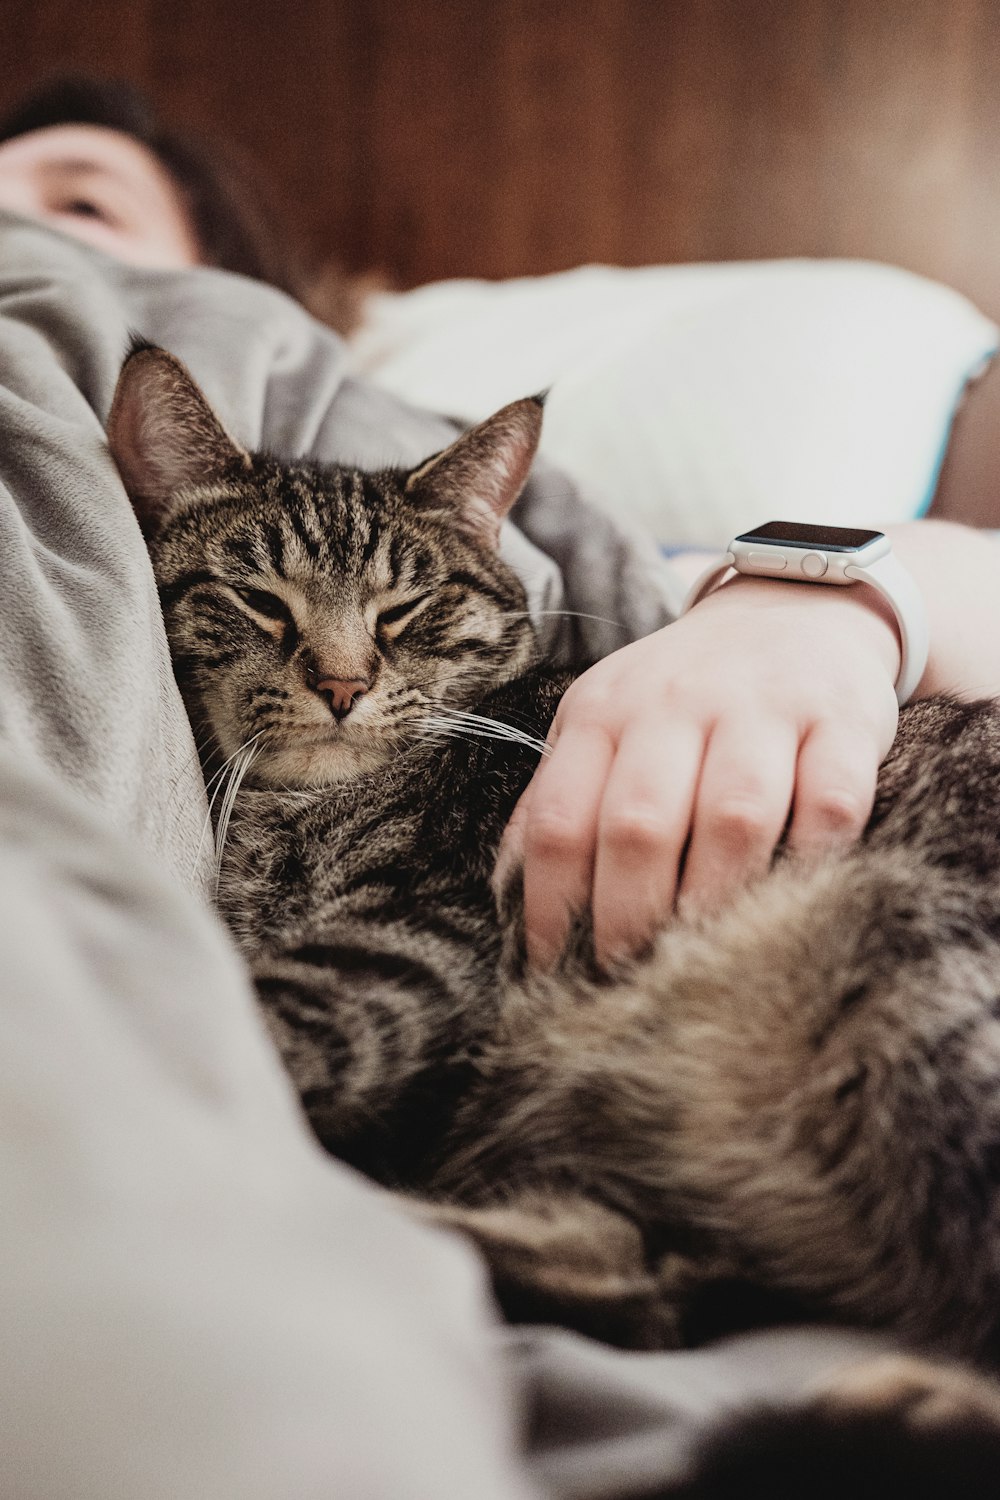 Persona sosteniendo gato atigrado gris mientras está acostado en la cama